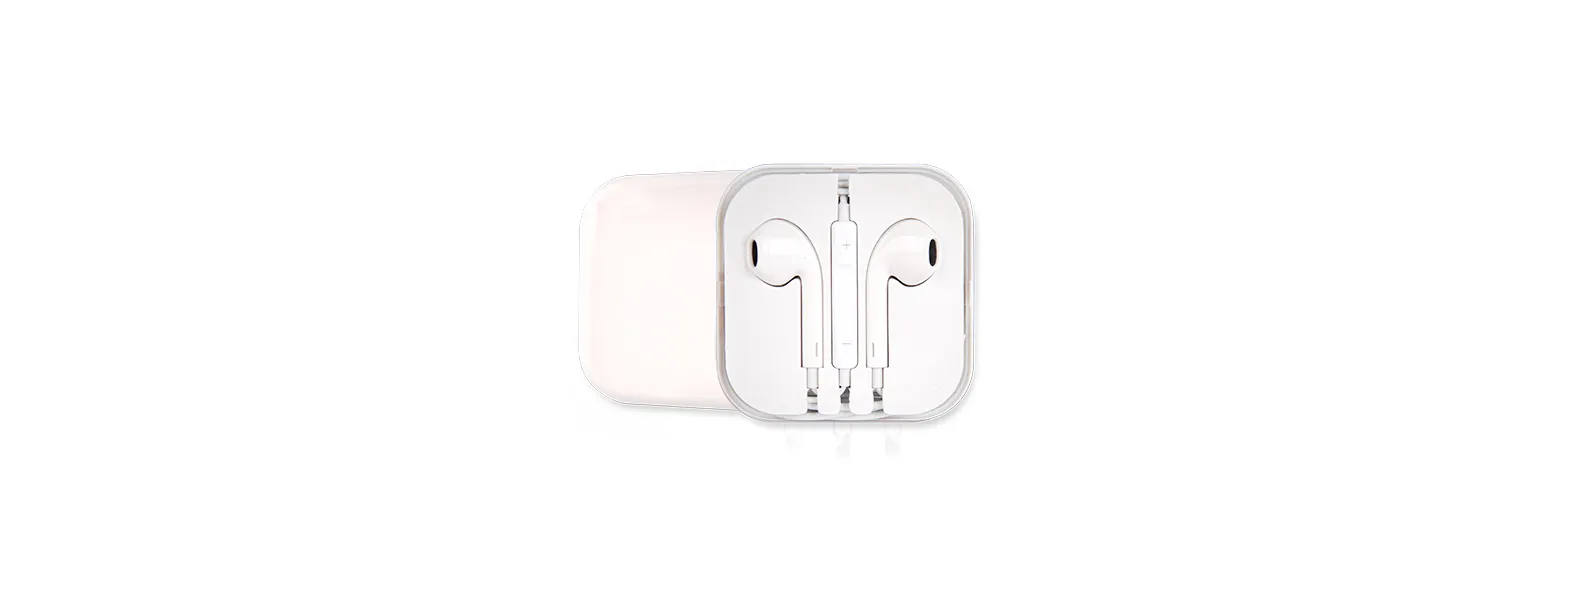 Fone de ouvido branco com microfone, controle de volume e estojo plástico. Conta com cabo de 1m e conector 3.5mm (P2, o mais comum para celulares, tablets e etc). Obs: os controles de volume funcionam apenas para celulares da Apple.